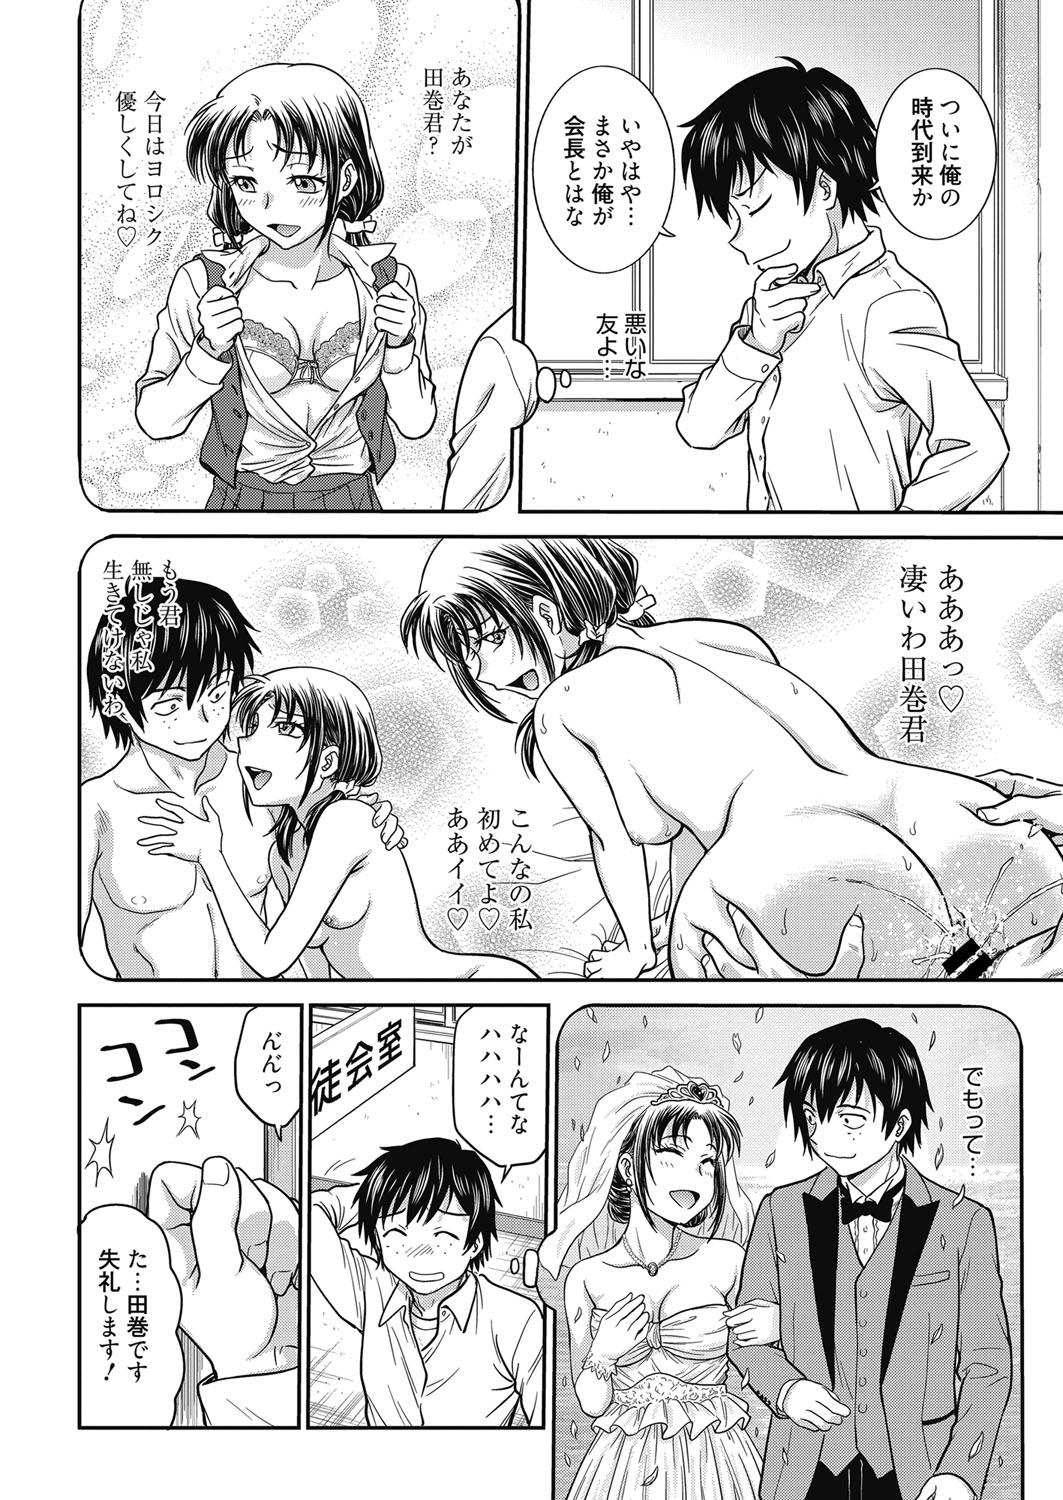 Sfm Web Manga Bangaichi Vol. 24 Teenage Girl Porn - Page 5